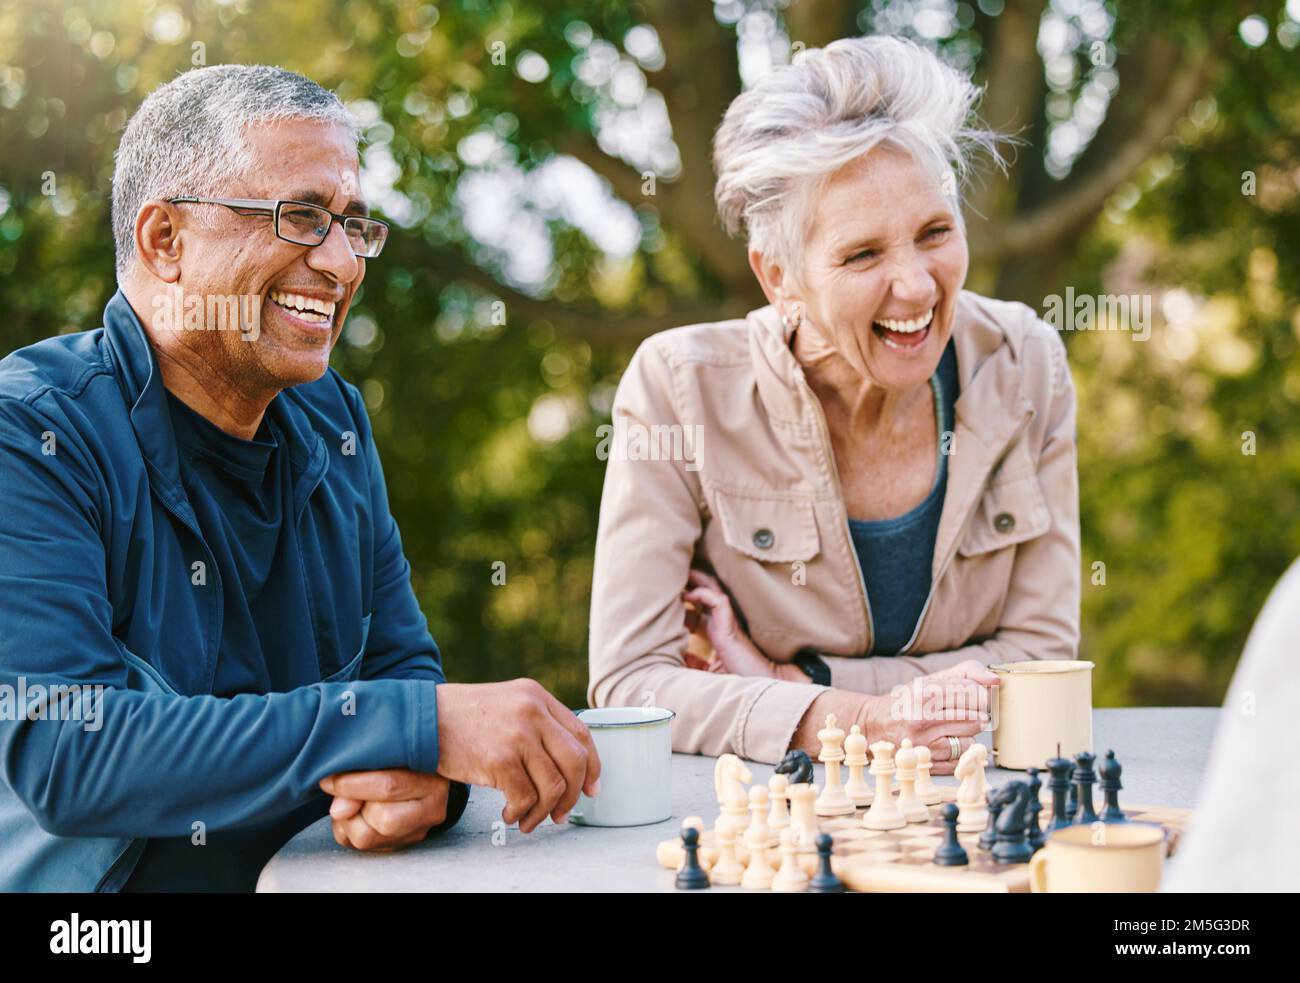 Glücklich, Schach oder ein paar Freunde in der Natur, die ein Brettspiel spielen, sich anfreunden oder über eine lustige Geschichte sprechen. Parken, unterstützen oder gesunde Senioren Stockfoto